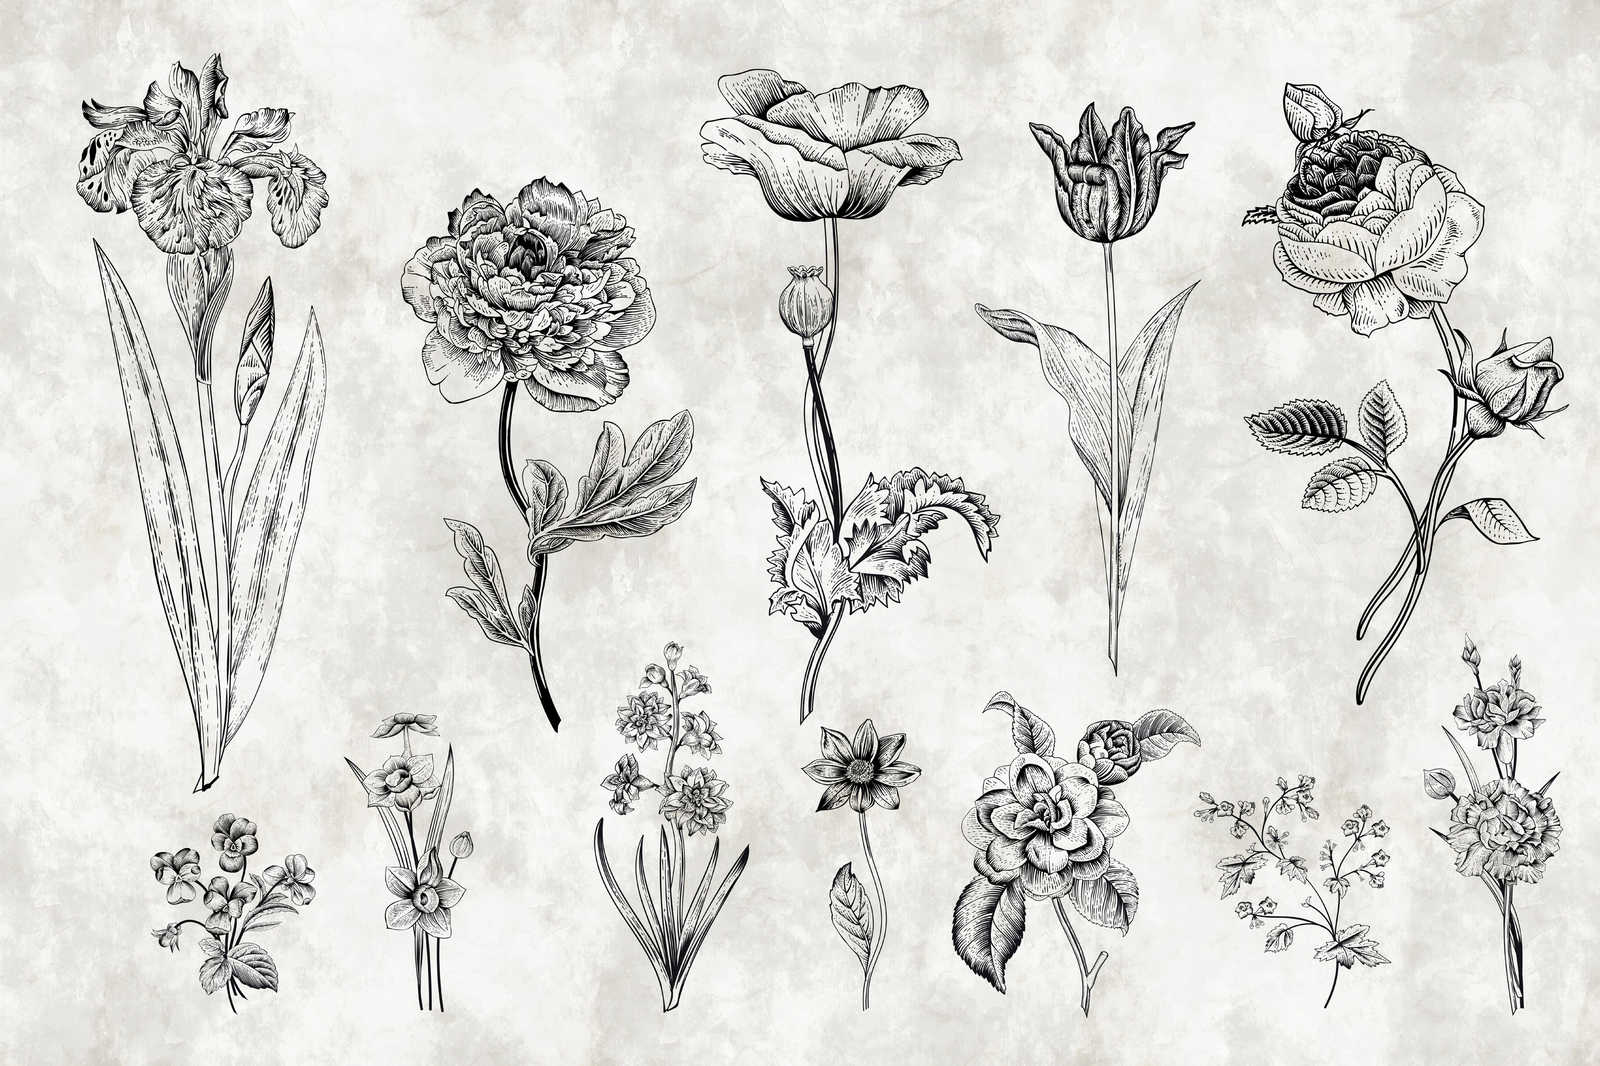             Leinwandbild Blumen im Zeichenstil – 0,90 m x 0,60 m
        